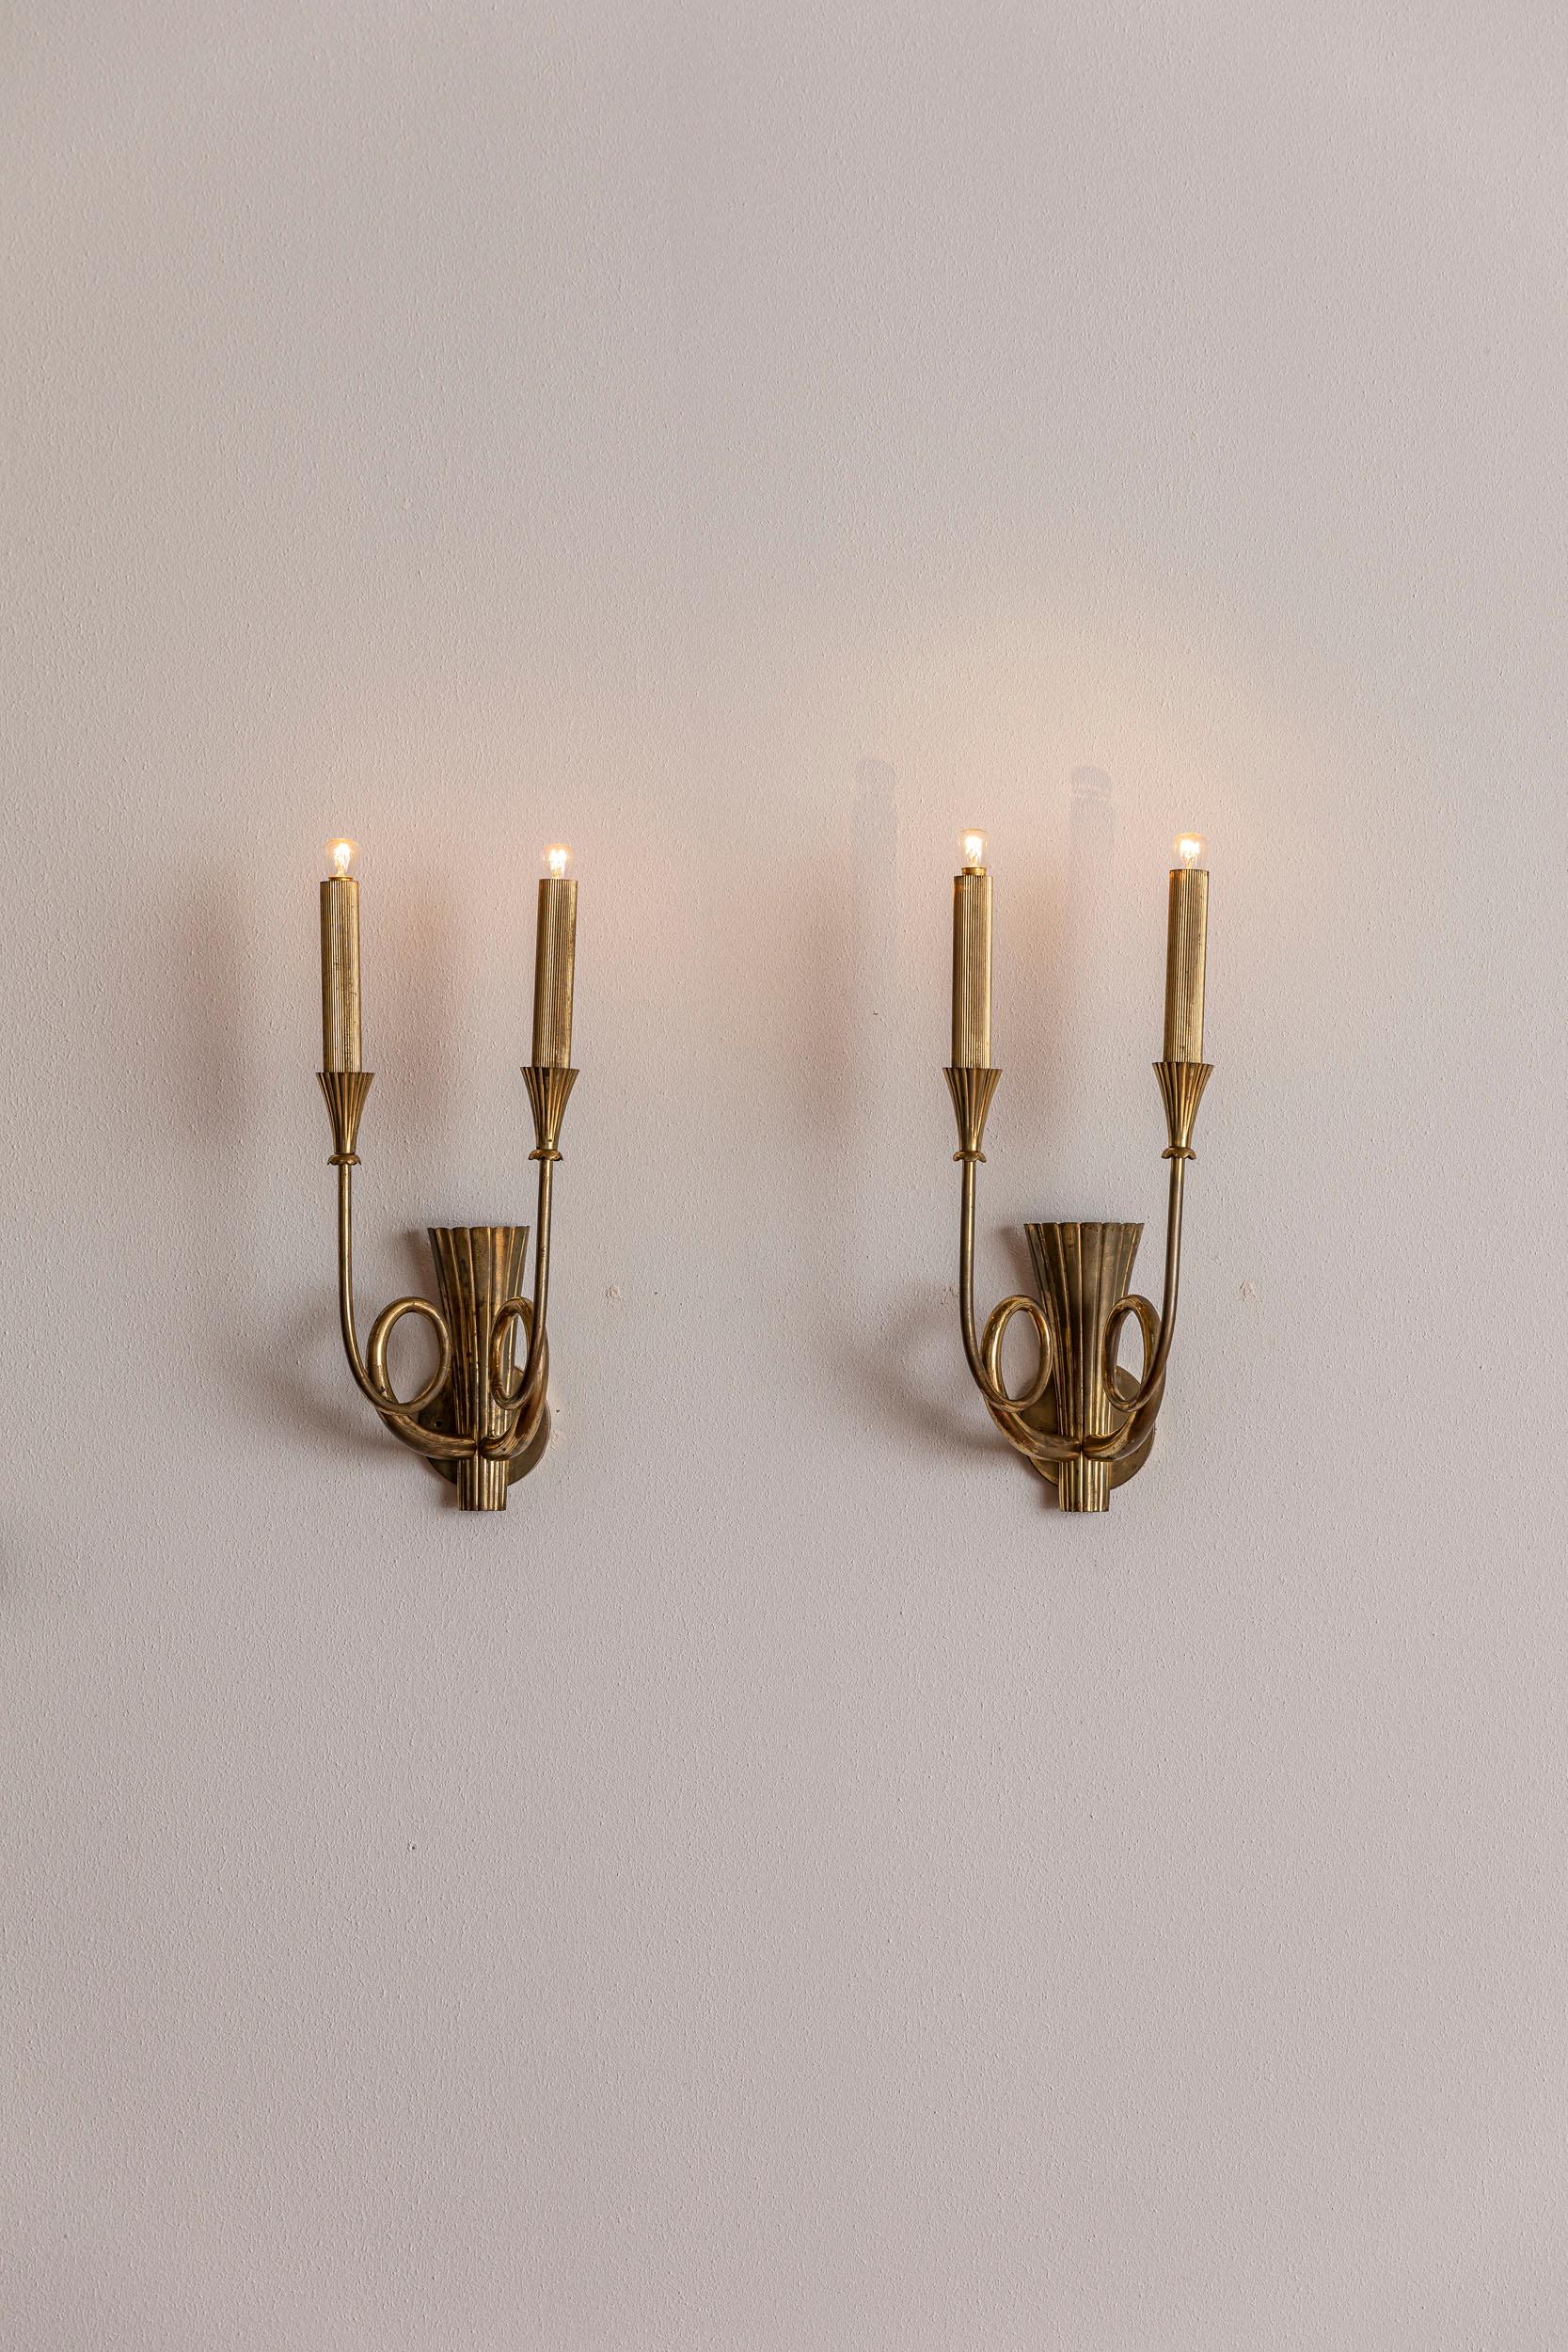 Italian Midcentury Brass Wall Lights 2